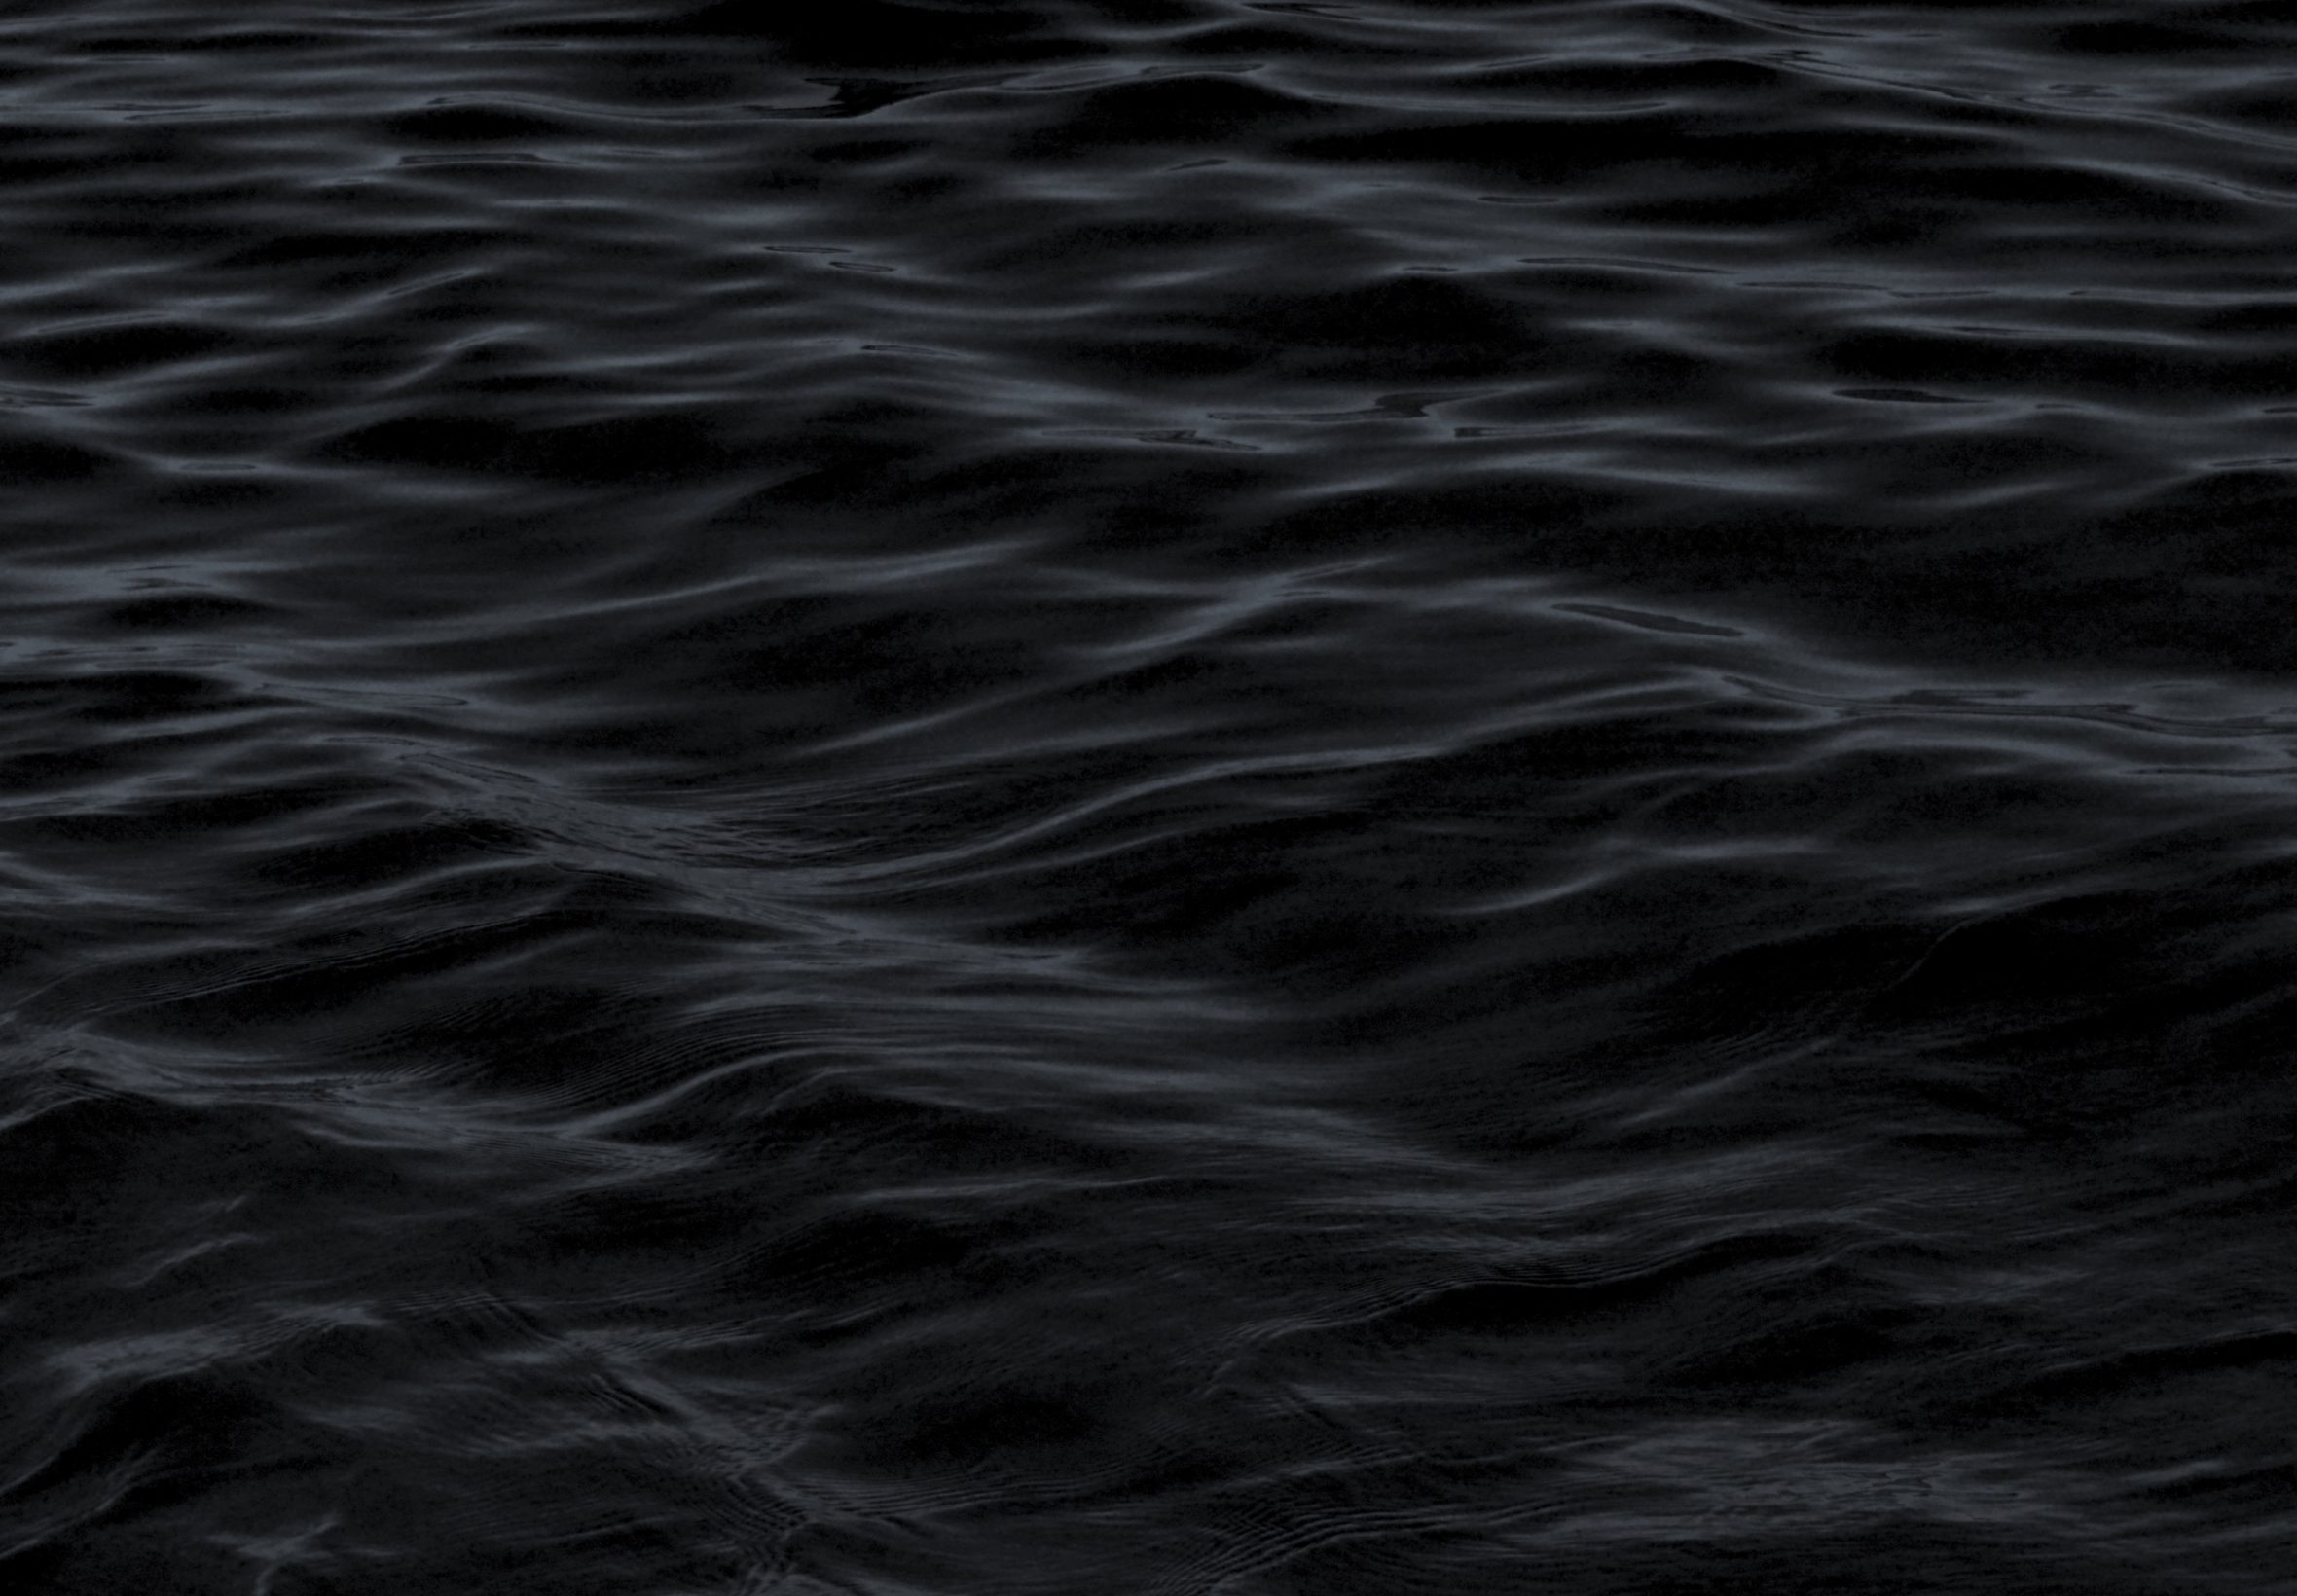 2360x1640 iPad Air wallpaper 4k Dark Water Waves Sea Pattern iPad Wallpaper 2360x1640 pixels resolution